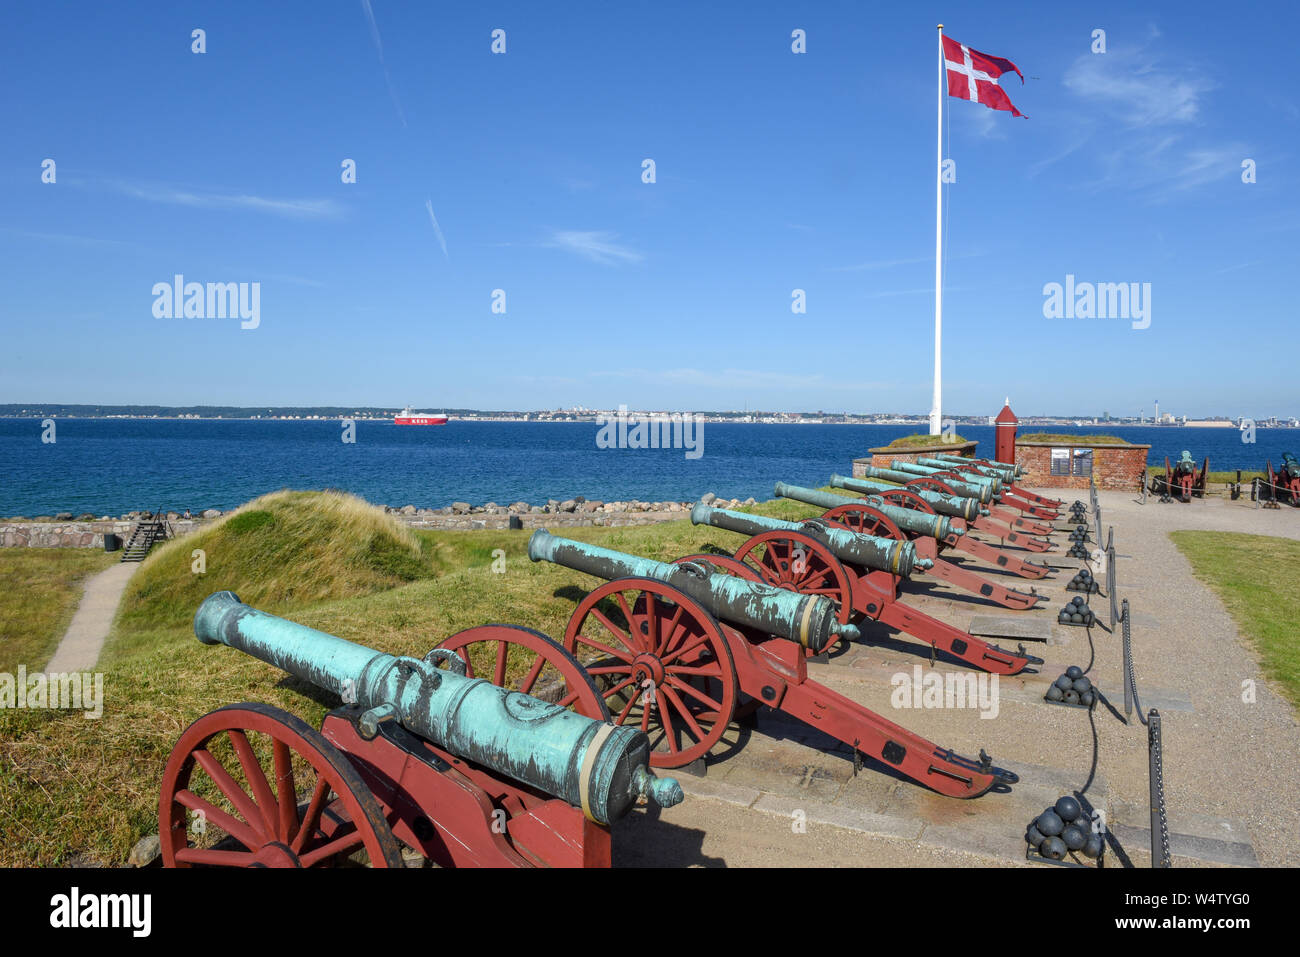 Helsingor, Denmark - 28 June 2019: cannon of Kronborg castle at Helsingor on Denmark Stock Photo